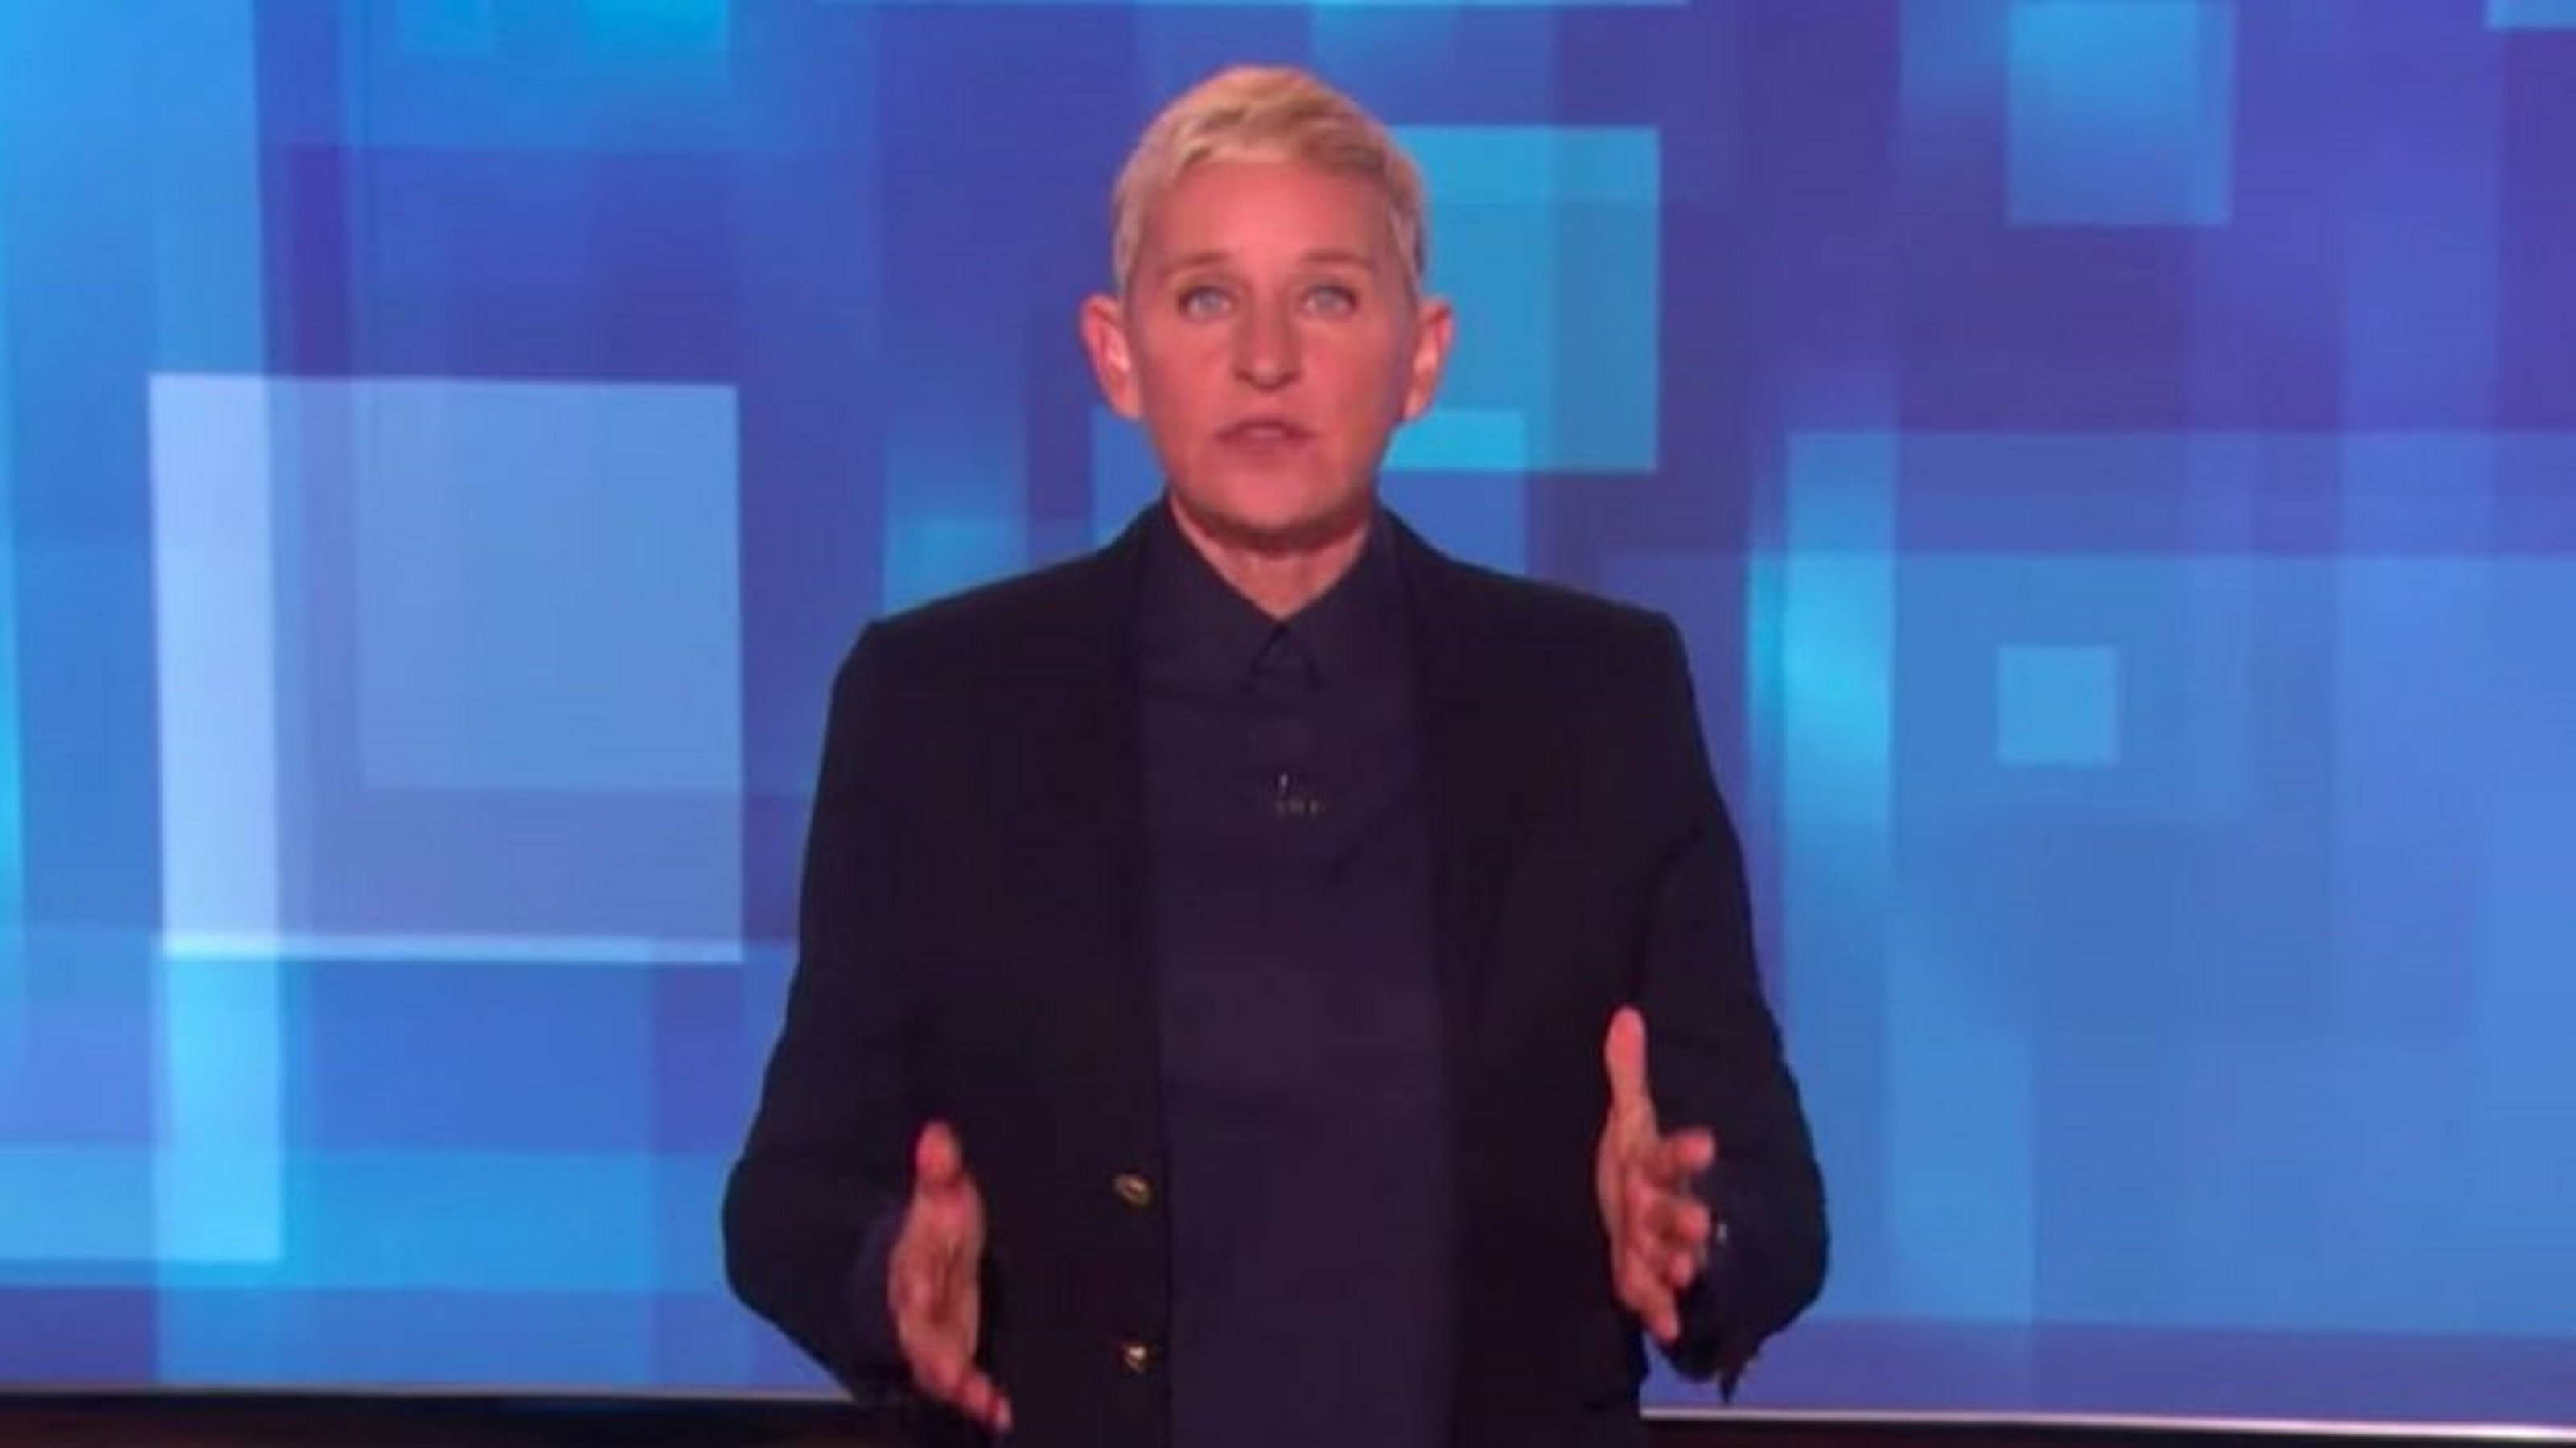 Ellen DeGeneres, un mite televisiu caigut en desgràcia: final a la seva carrera?